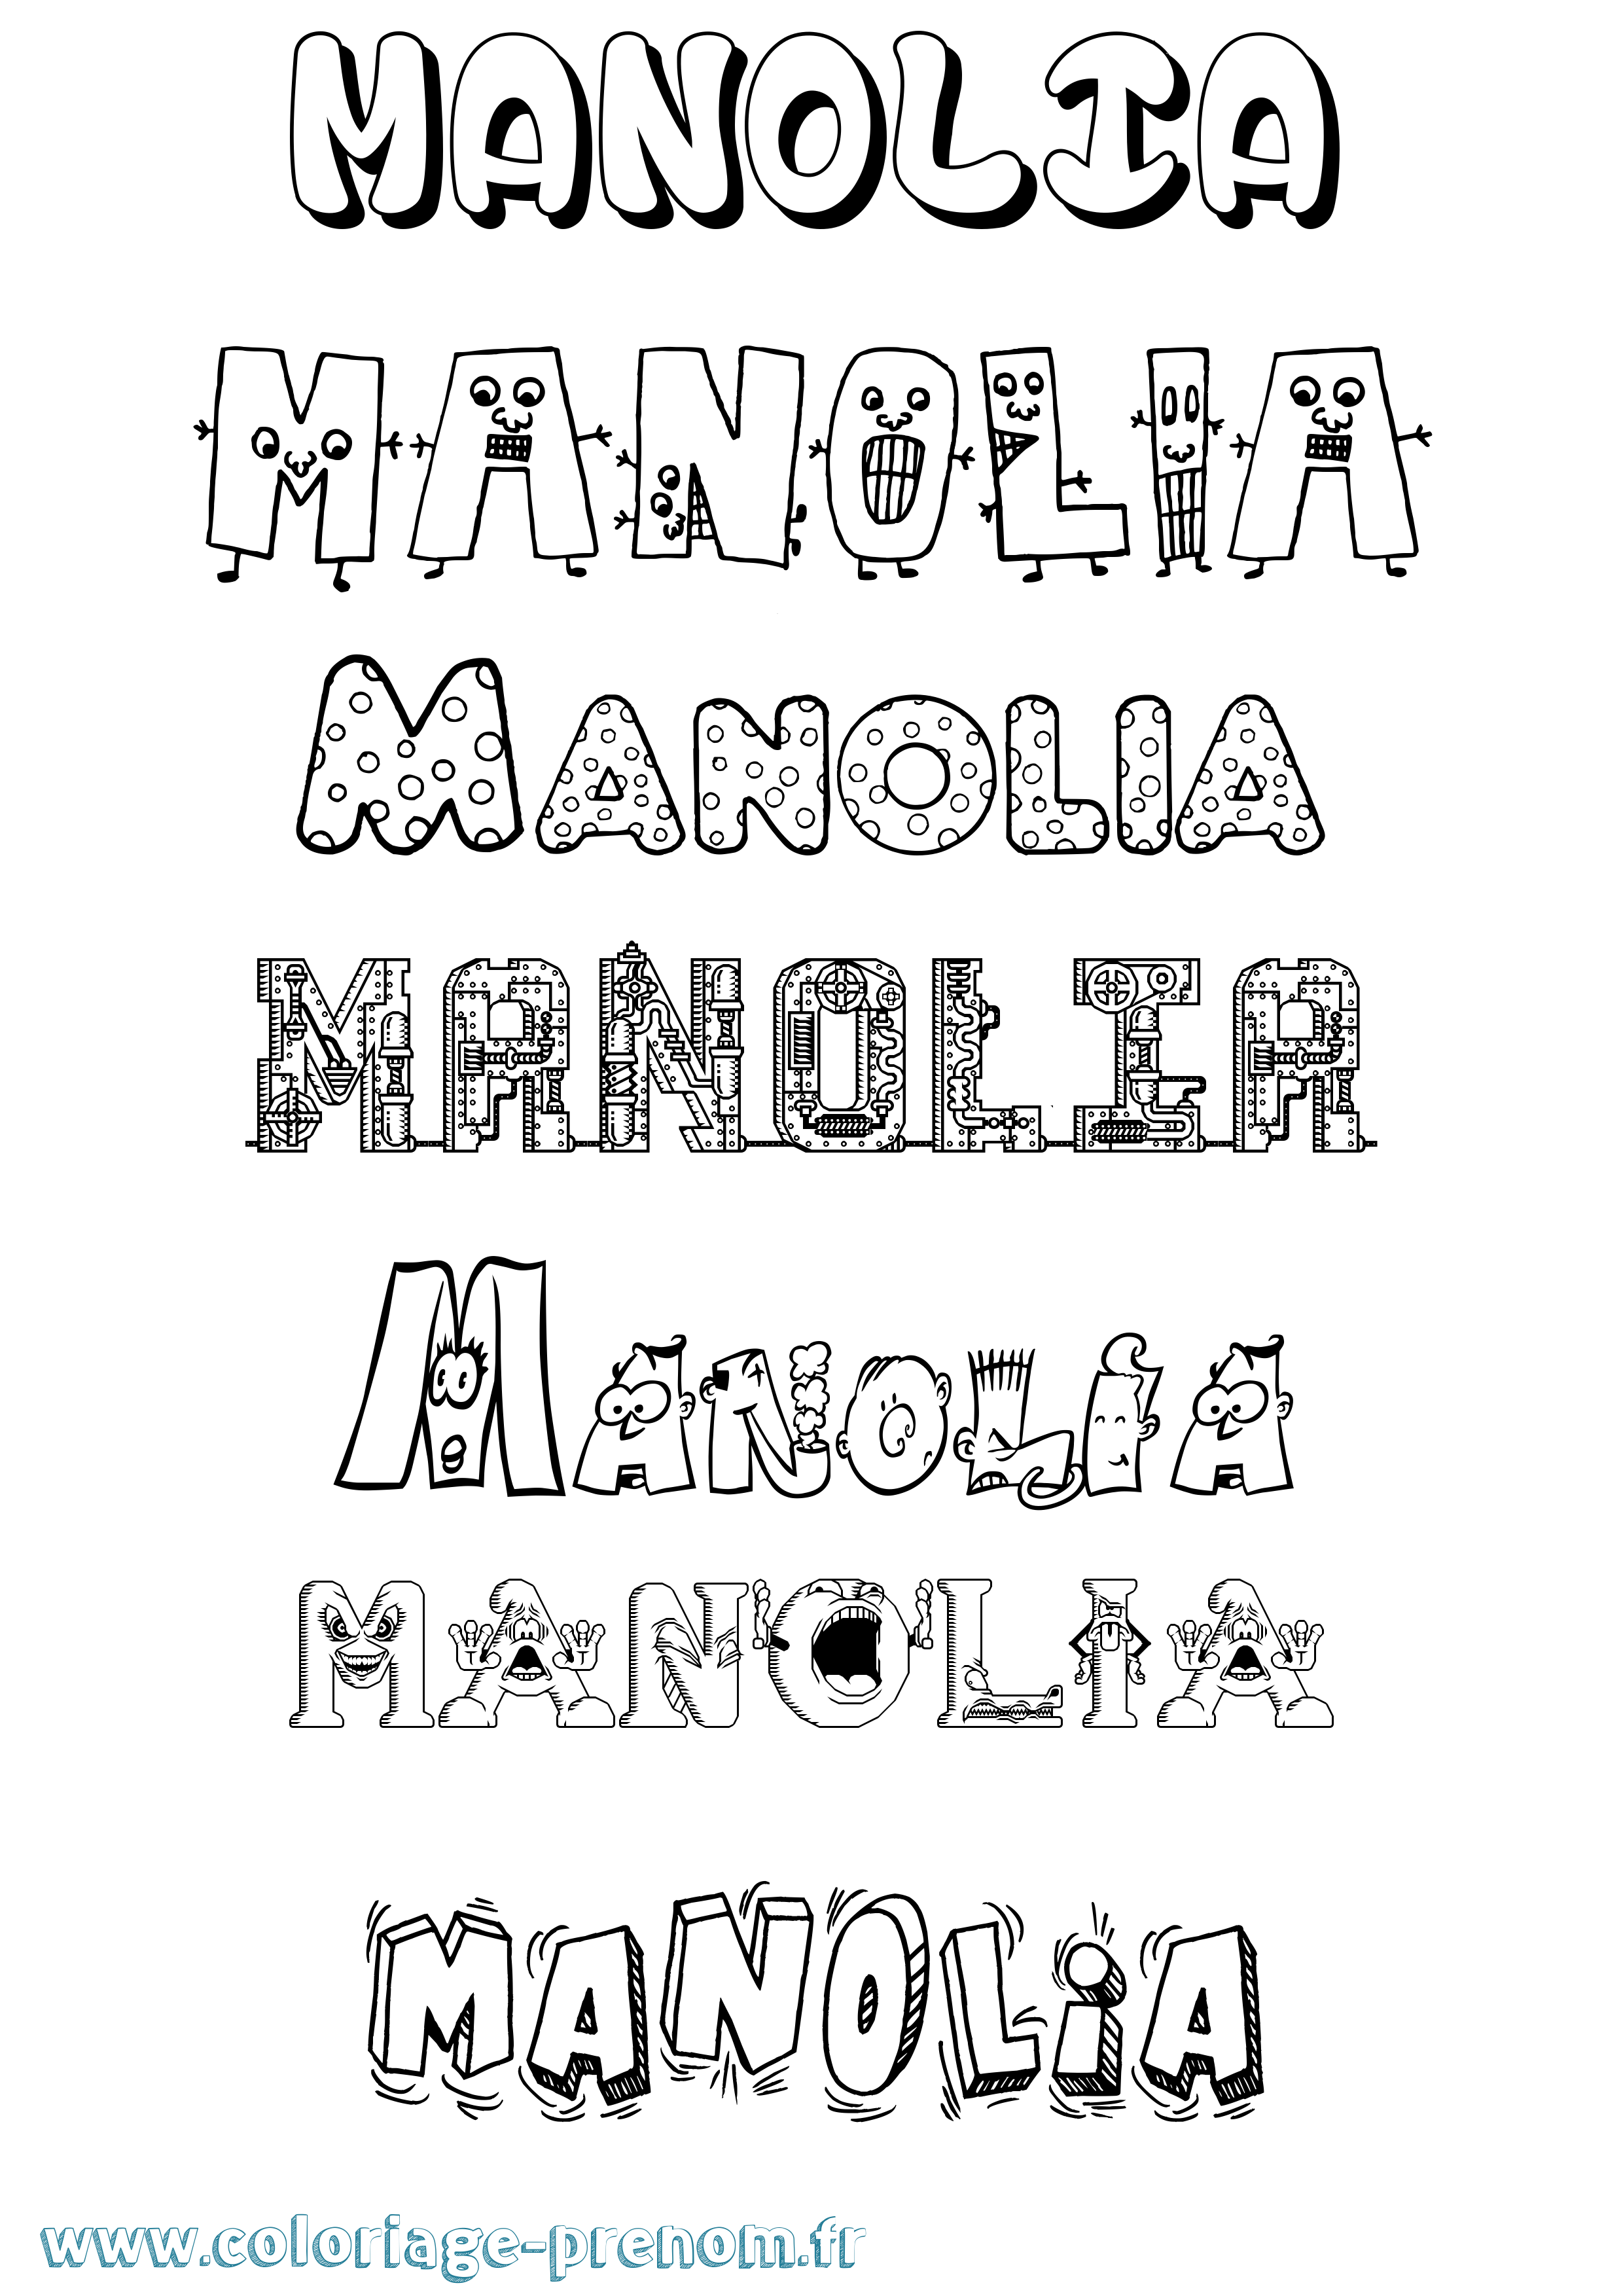 Coloriage prénom Manolia Fun